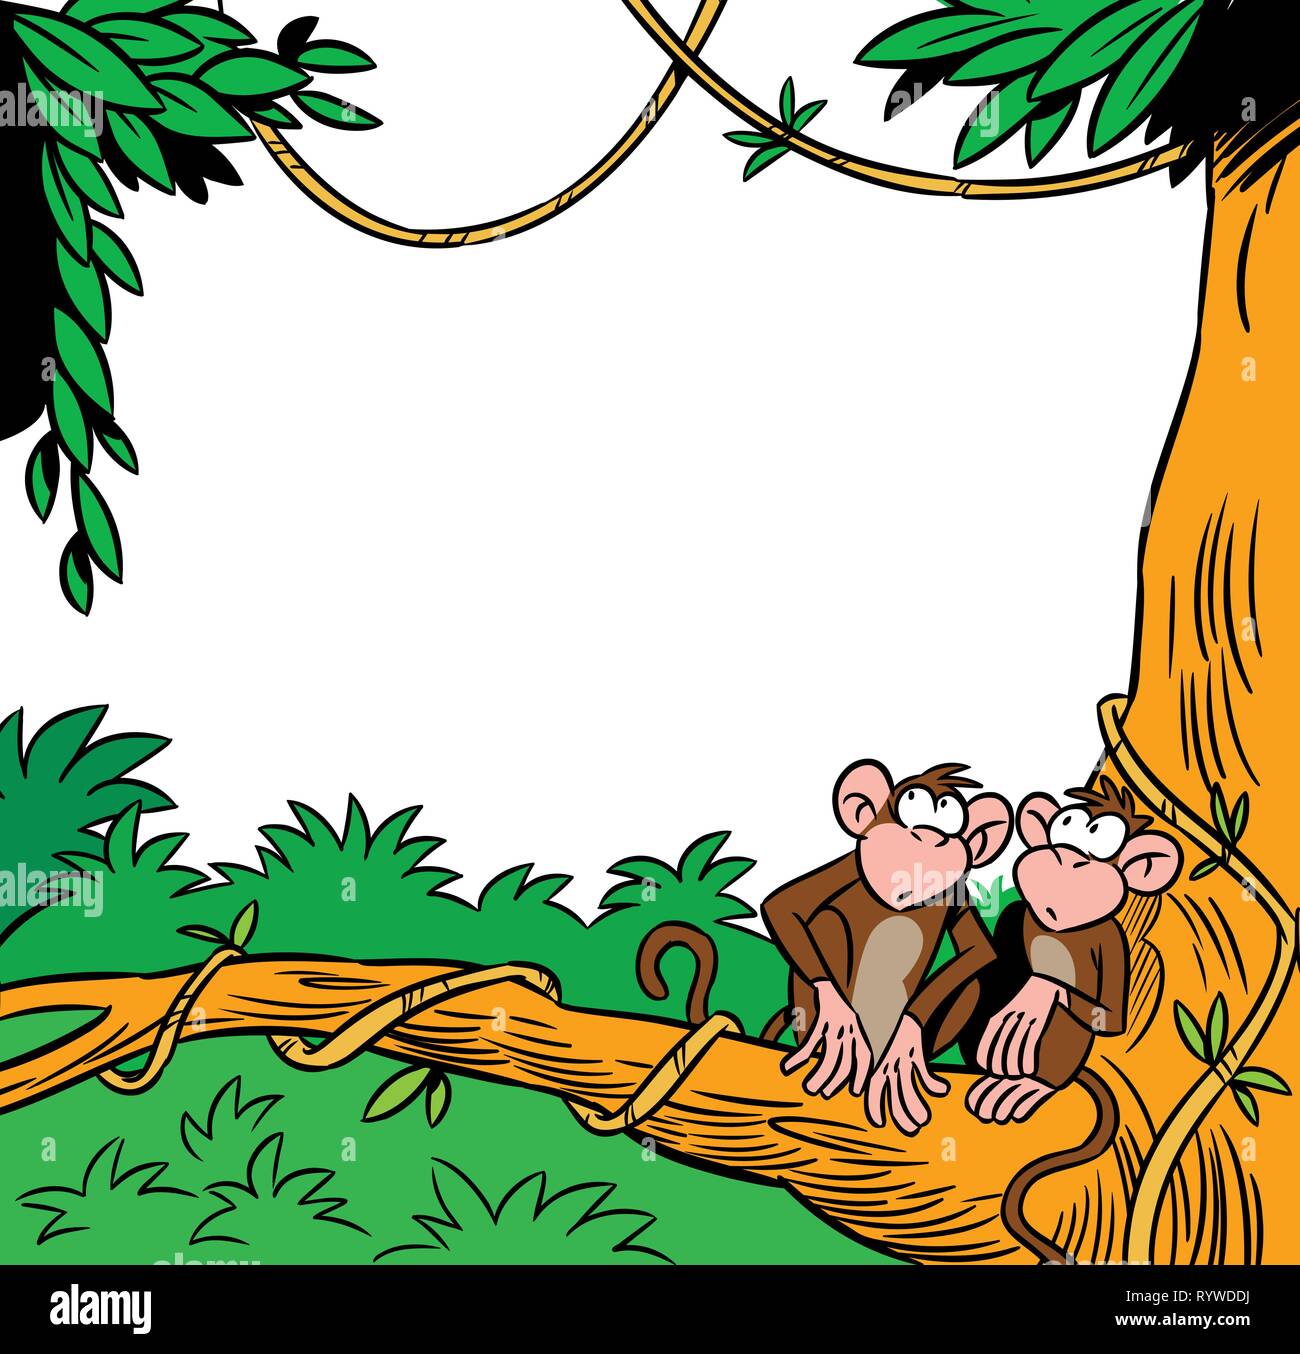 L'illustration montre deux funny monkey assis sur un arbre dans le contexte de la jungle. Il y a une place pour le texte, fait dans un style cartoon Illustration de Vecteur